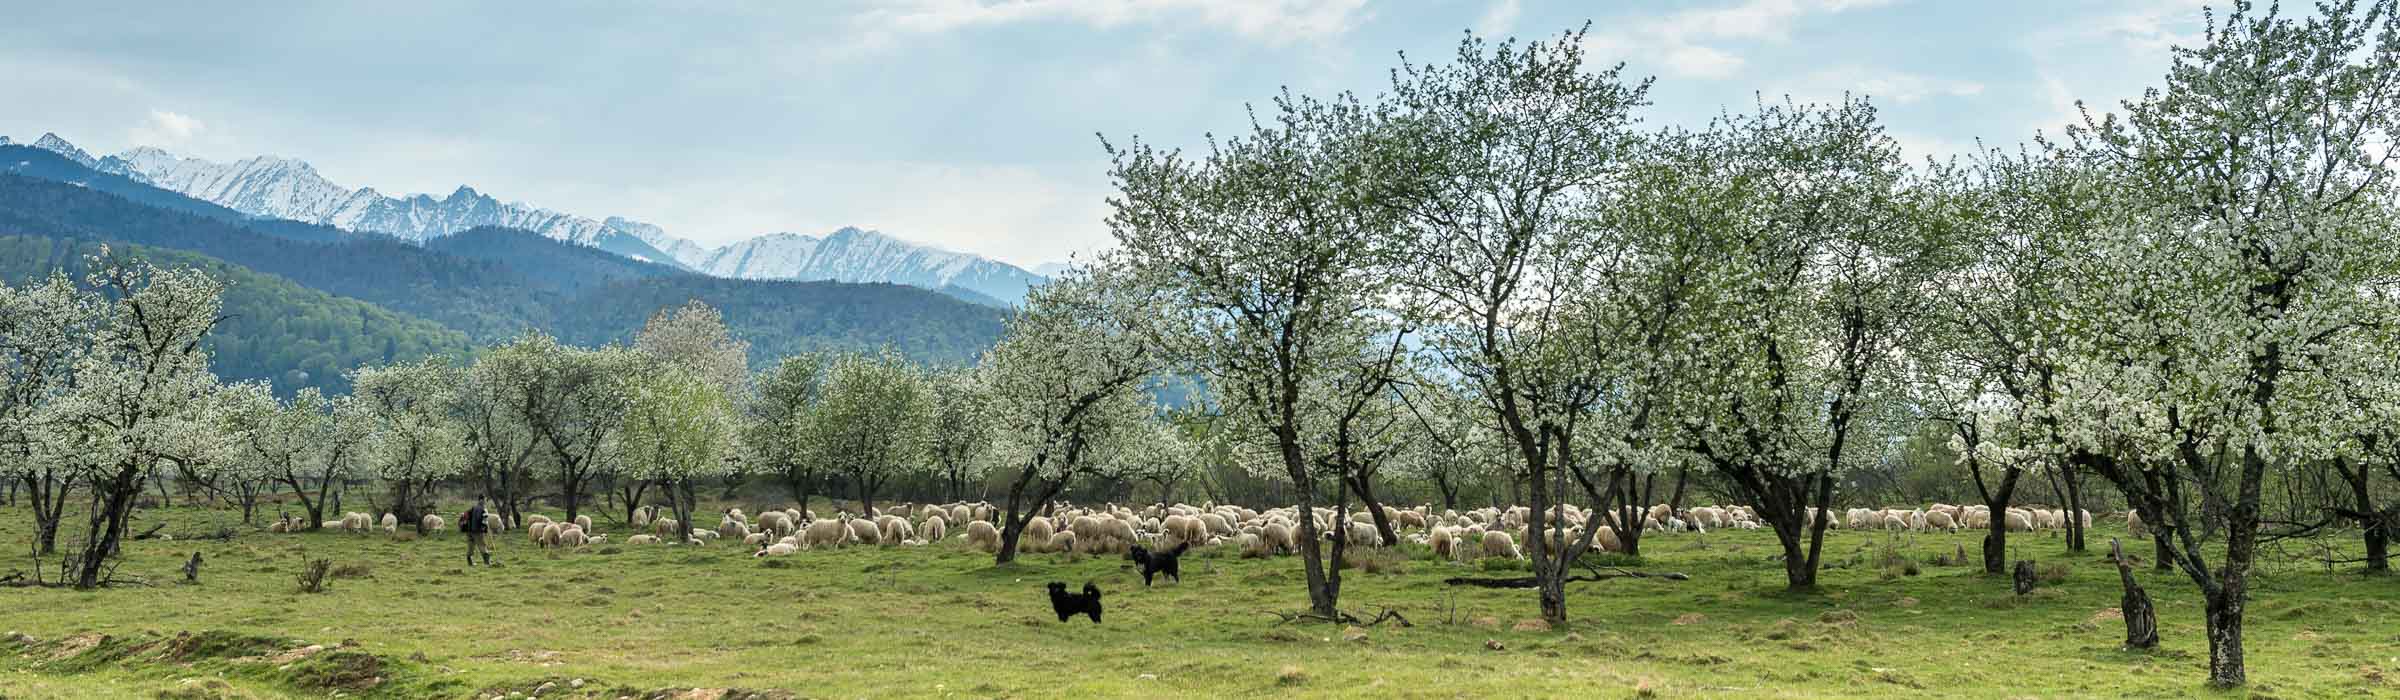 Schafsherde - Fotoreise Siebenbürgen Rumänien